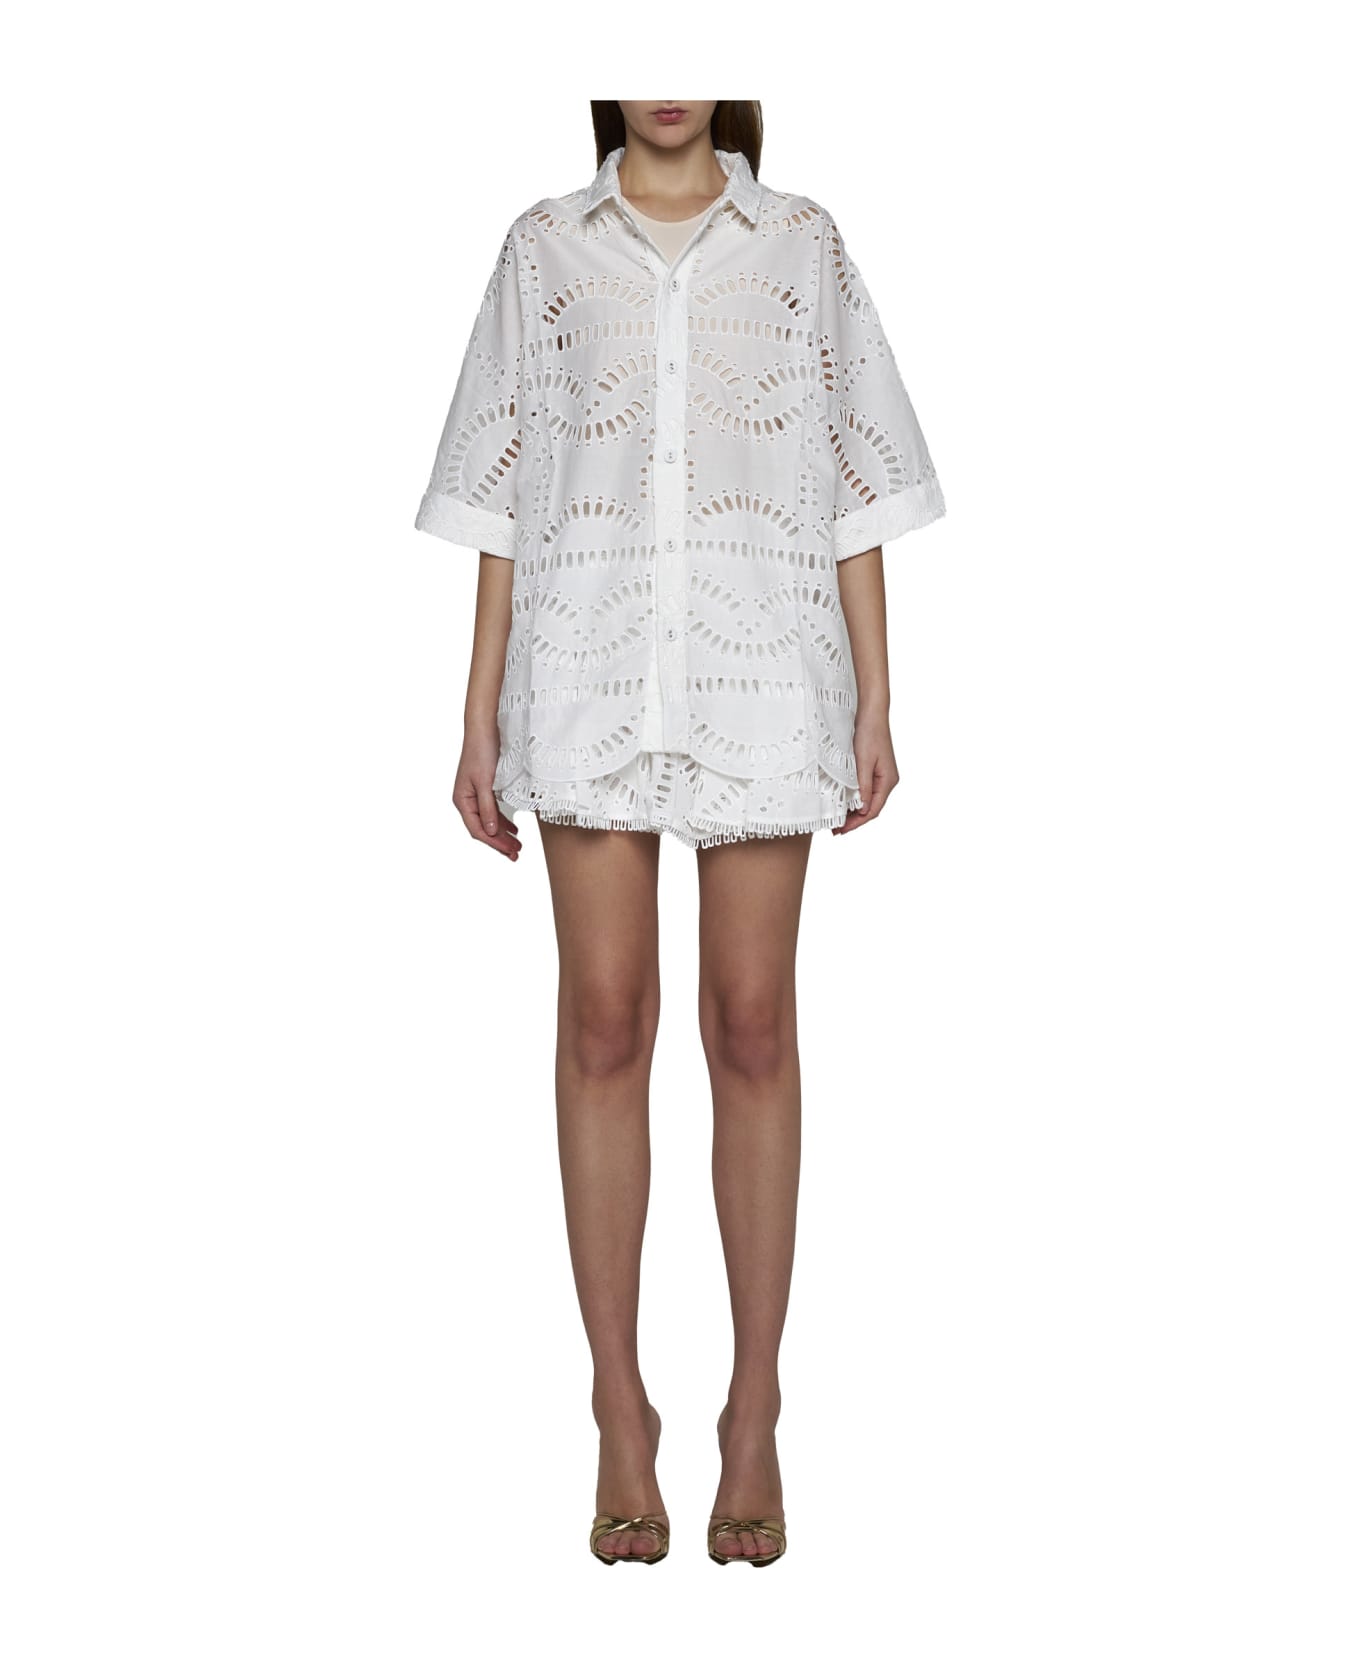 Charo Ruiz Shirt - White samoa シャツ